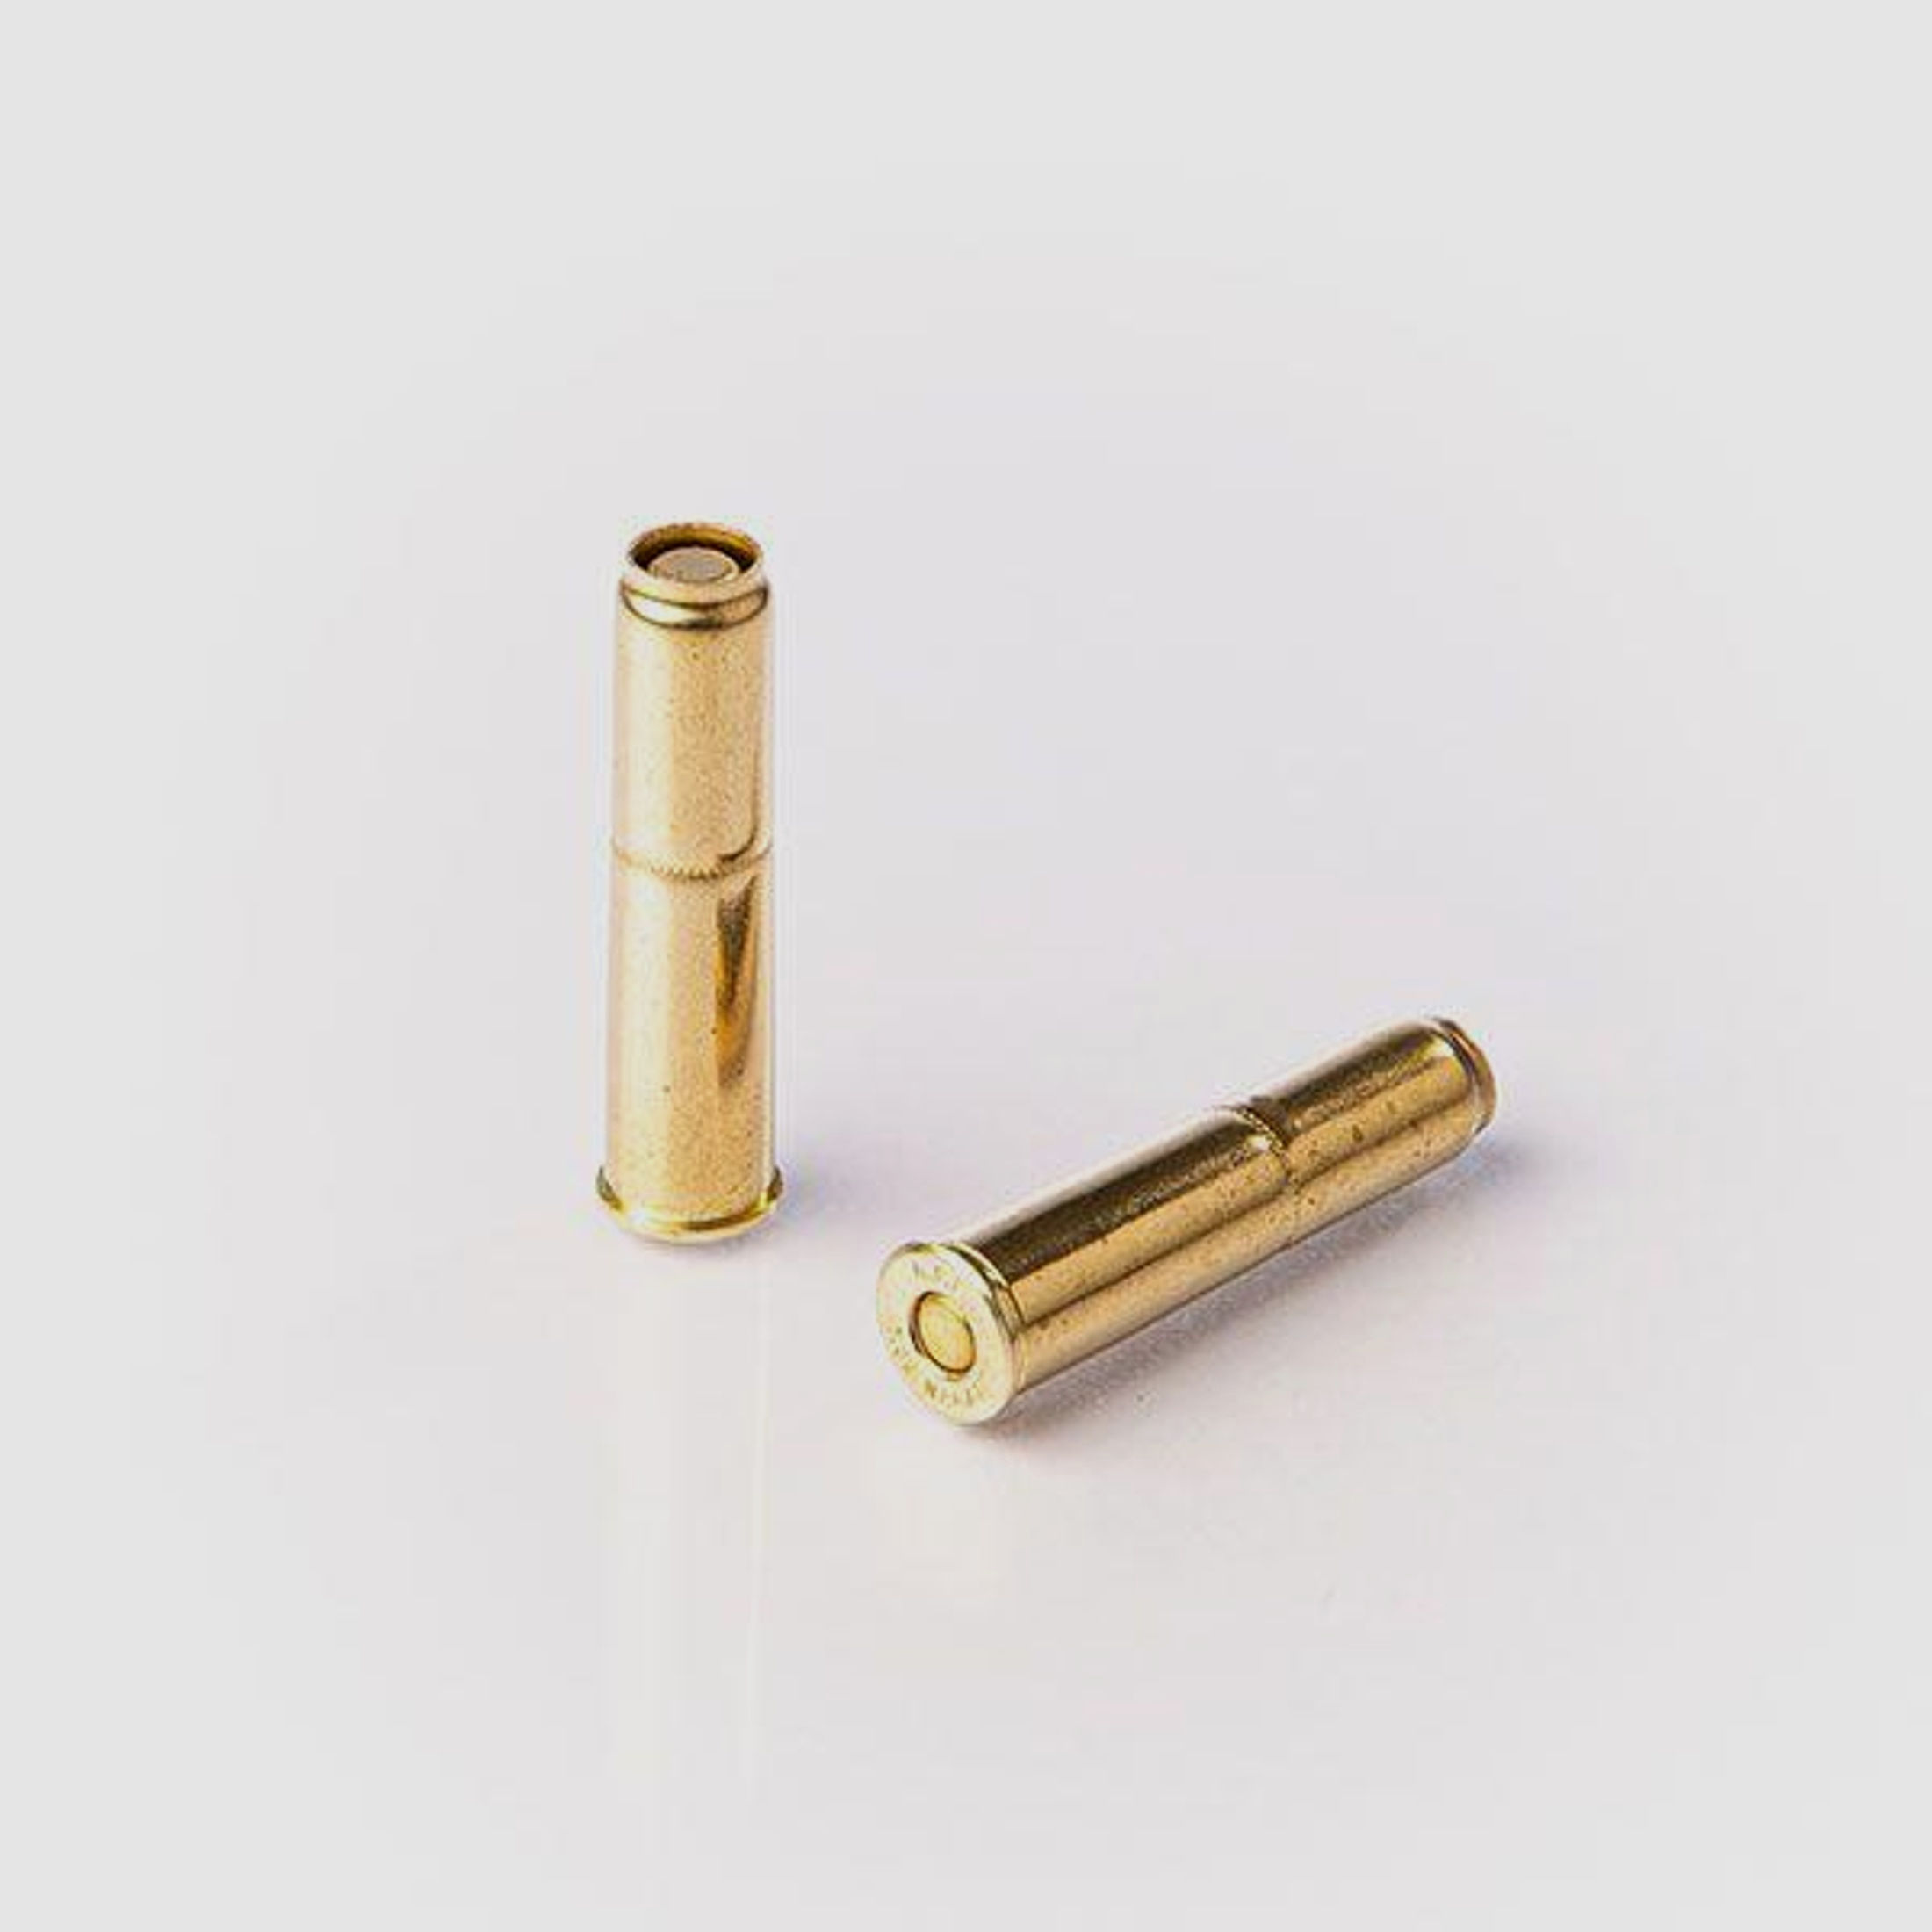 FIOCCHI Revolvermunition 7,62 Nagant 50 Stk     6,35g